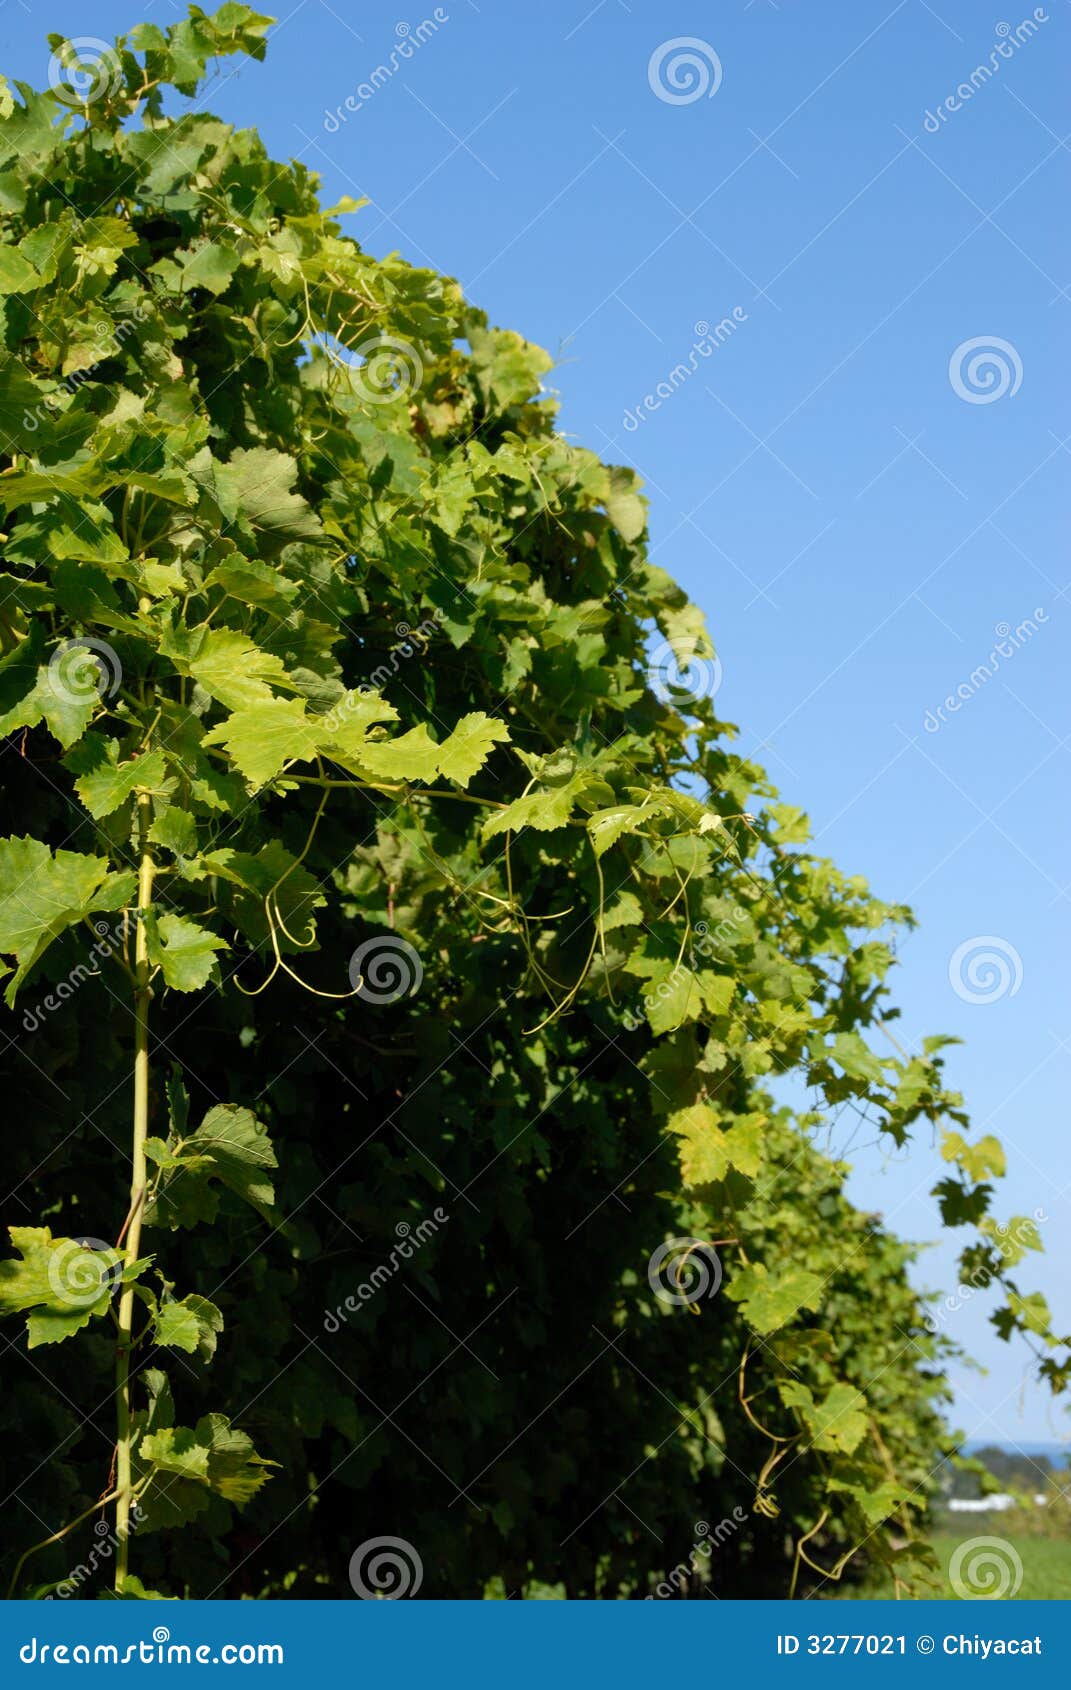 syrah/shiraz vines